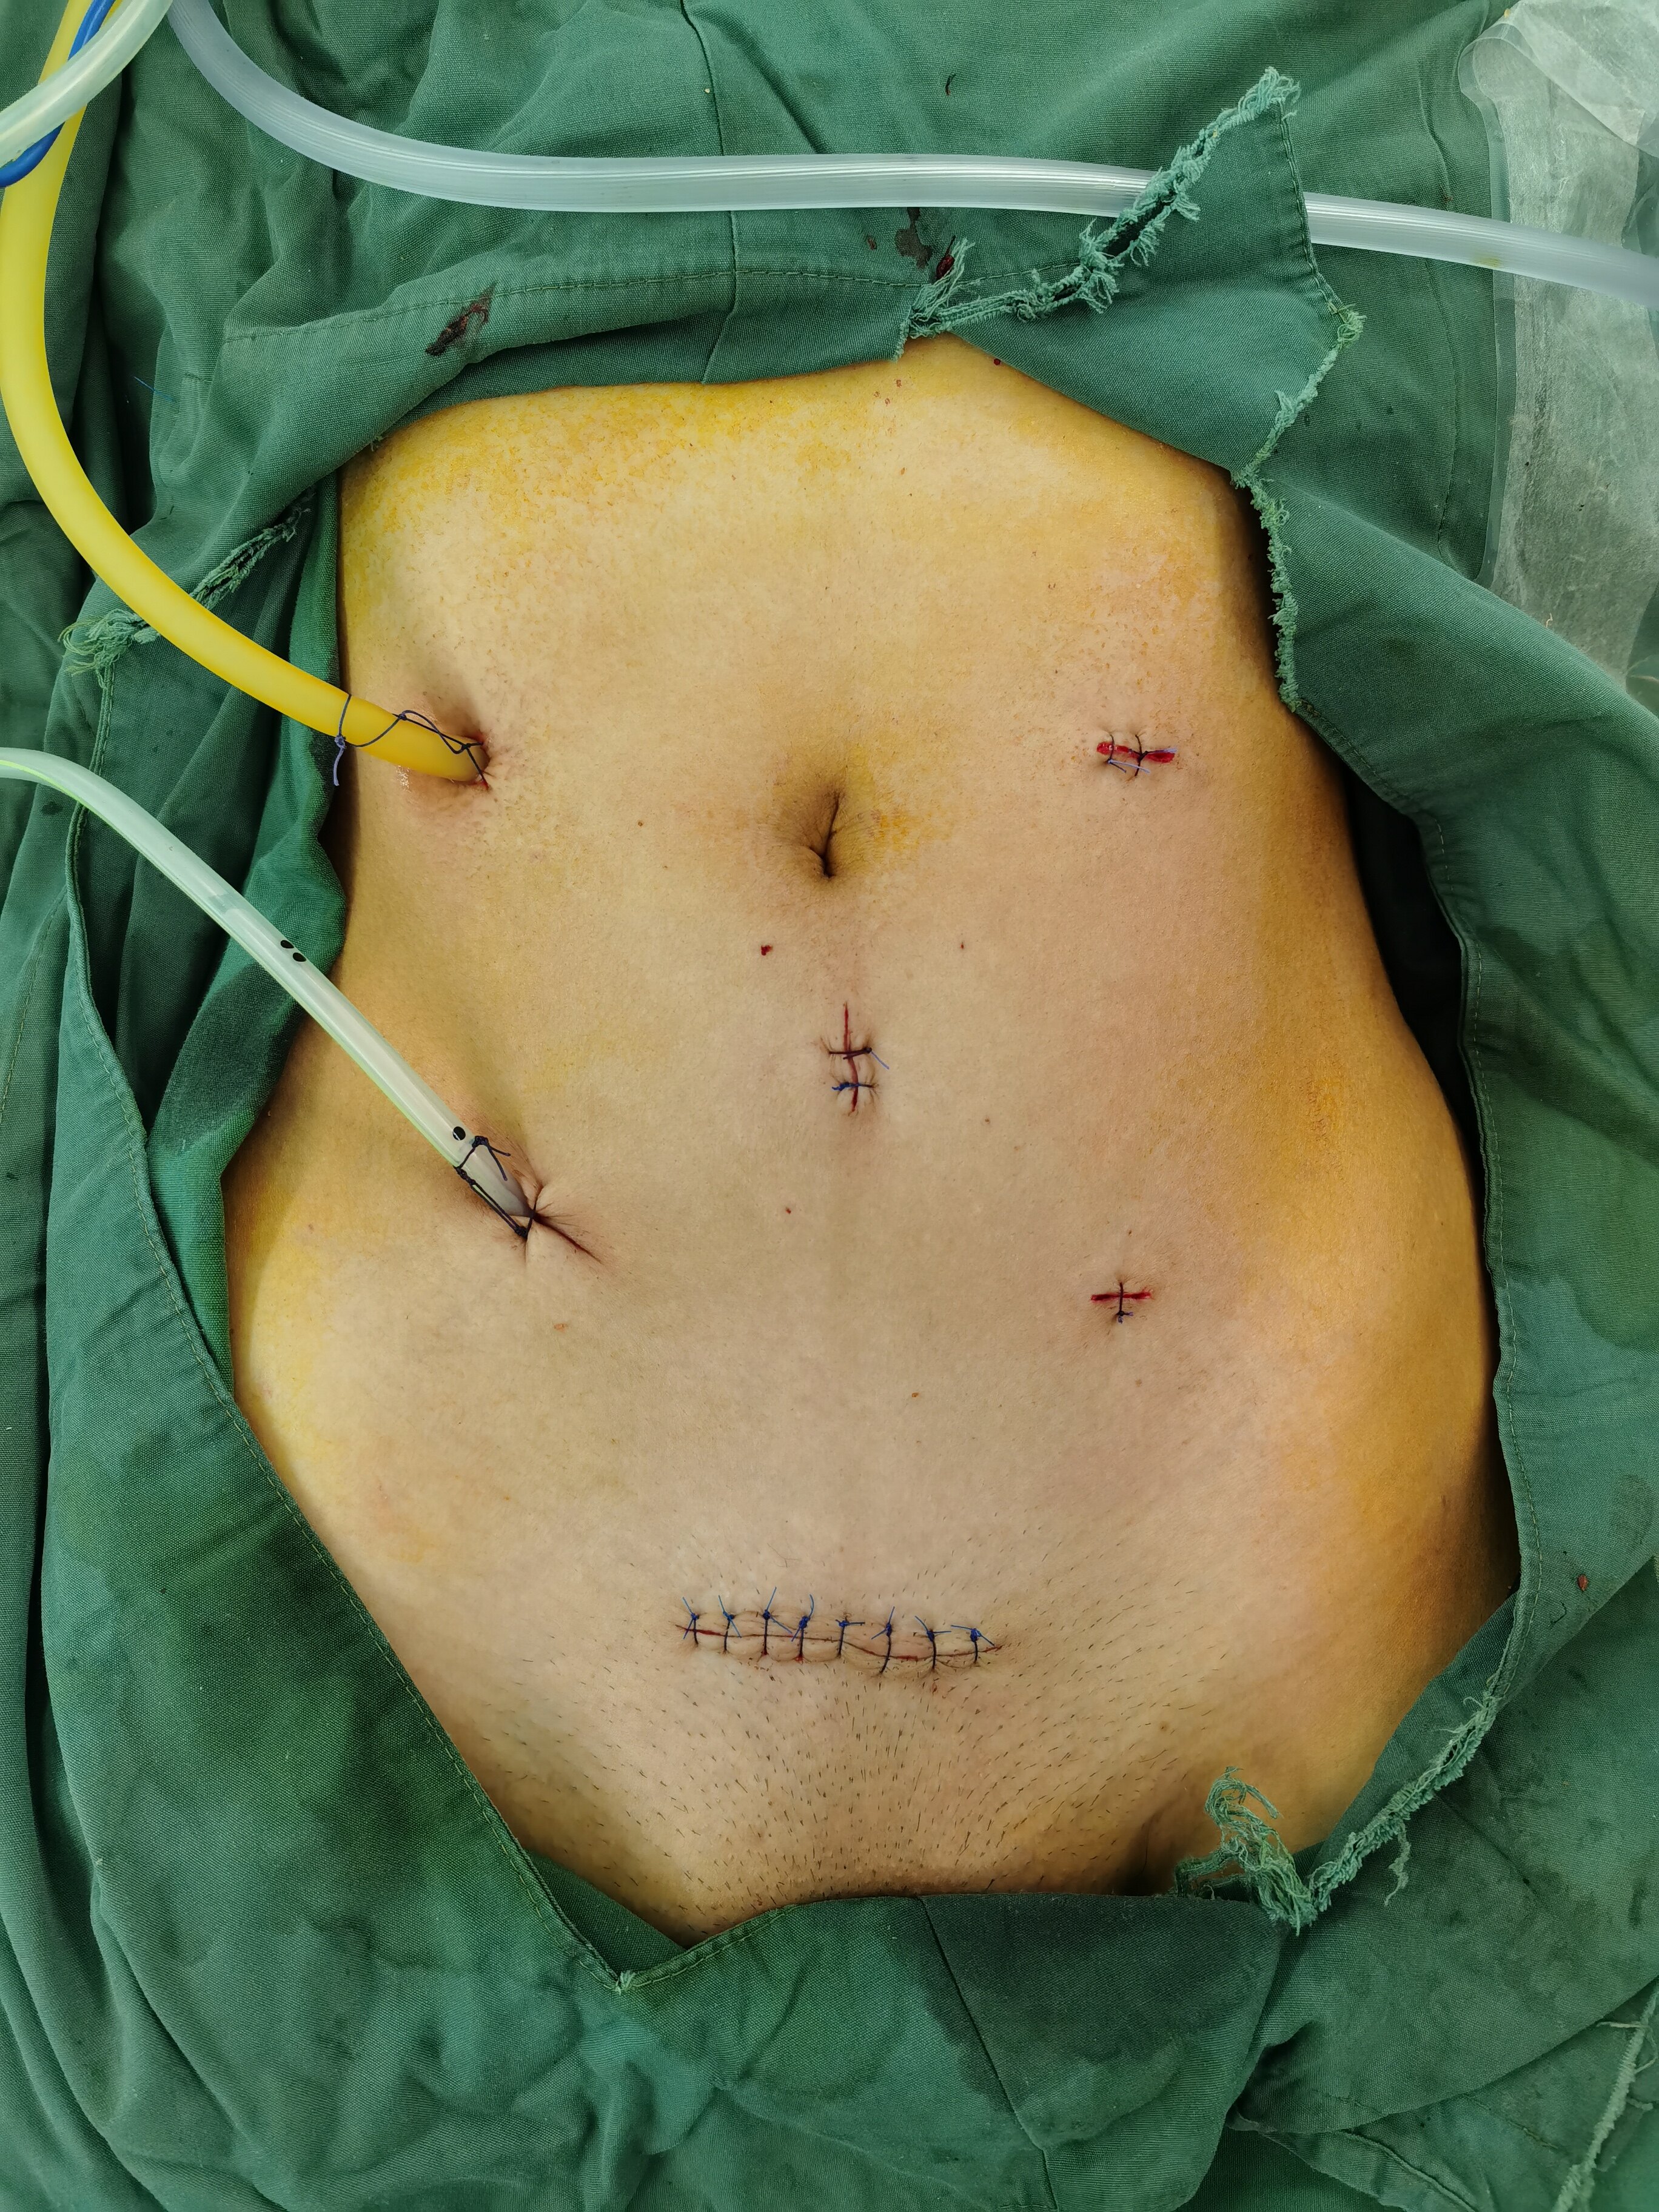 不同手术方式术后腹壁切口对比noses手术患者的福音